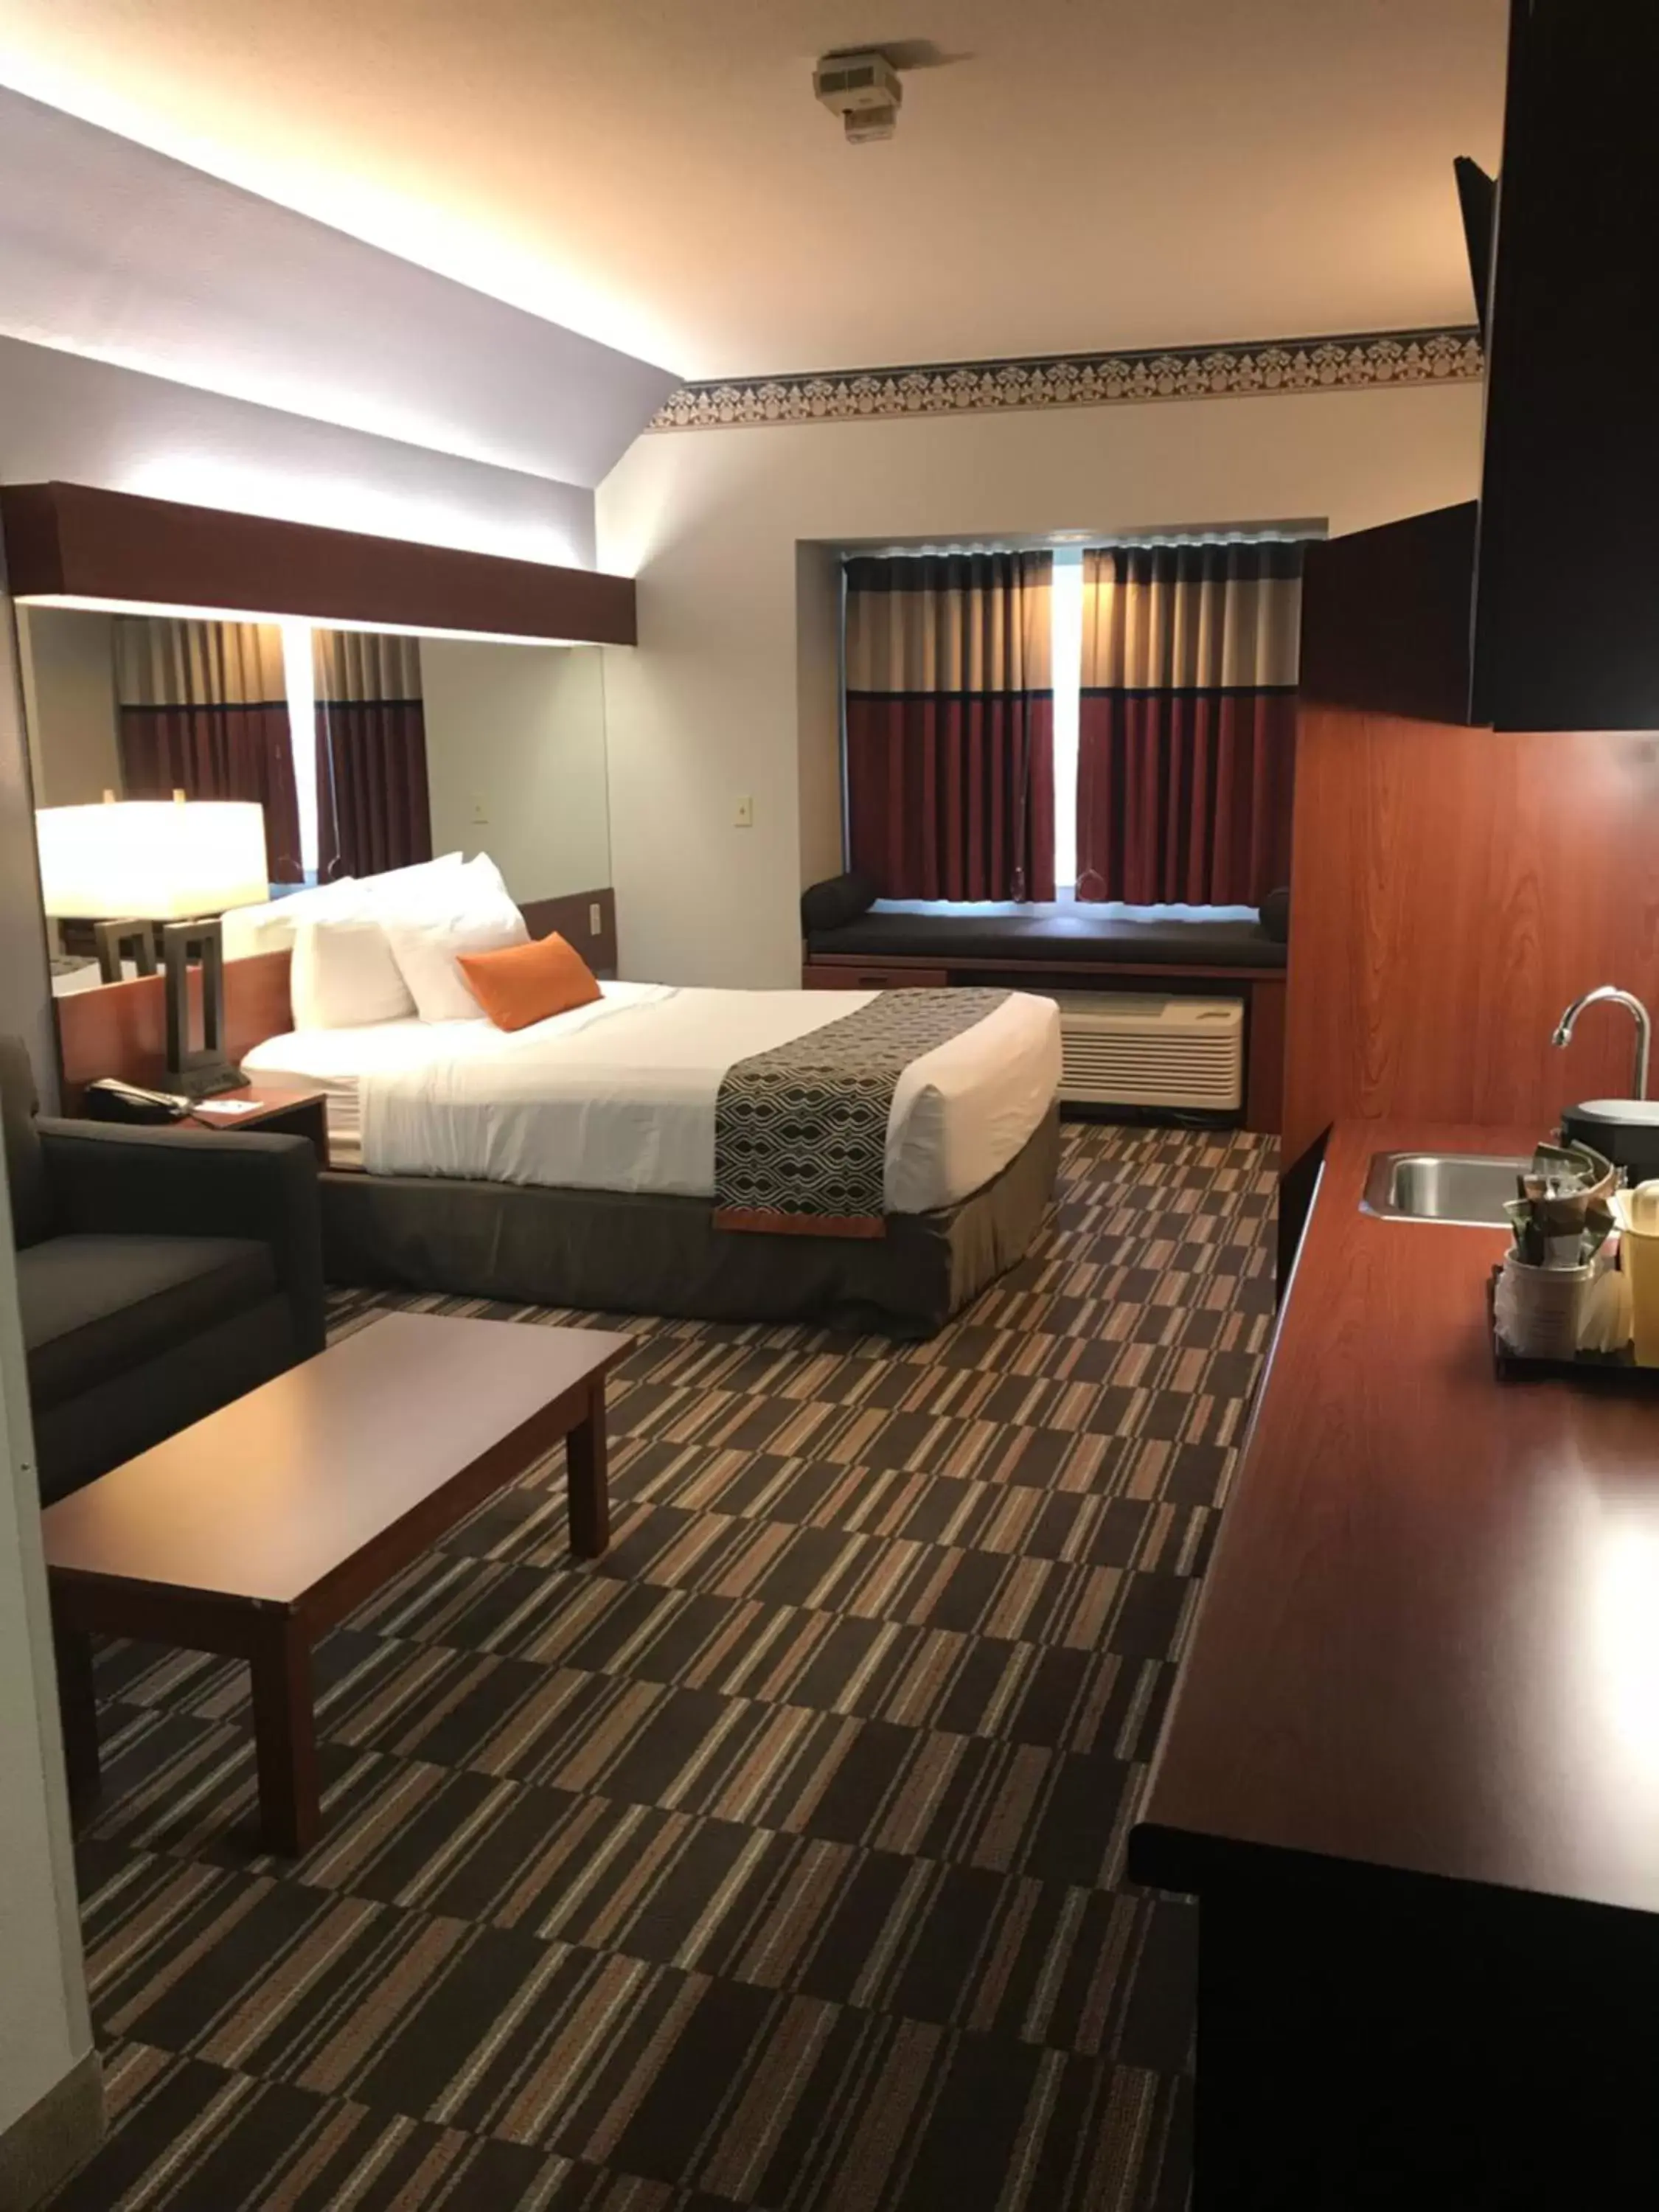 Bed in Microtel Inn & Suites Urbandale